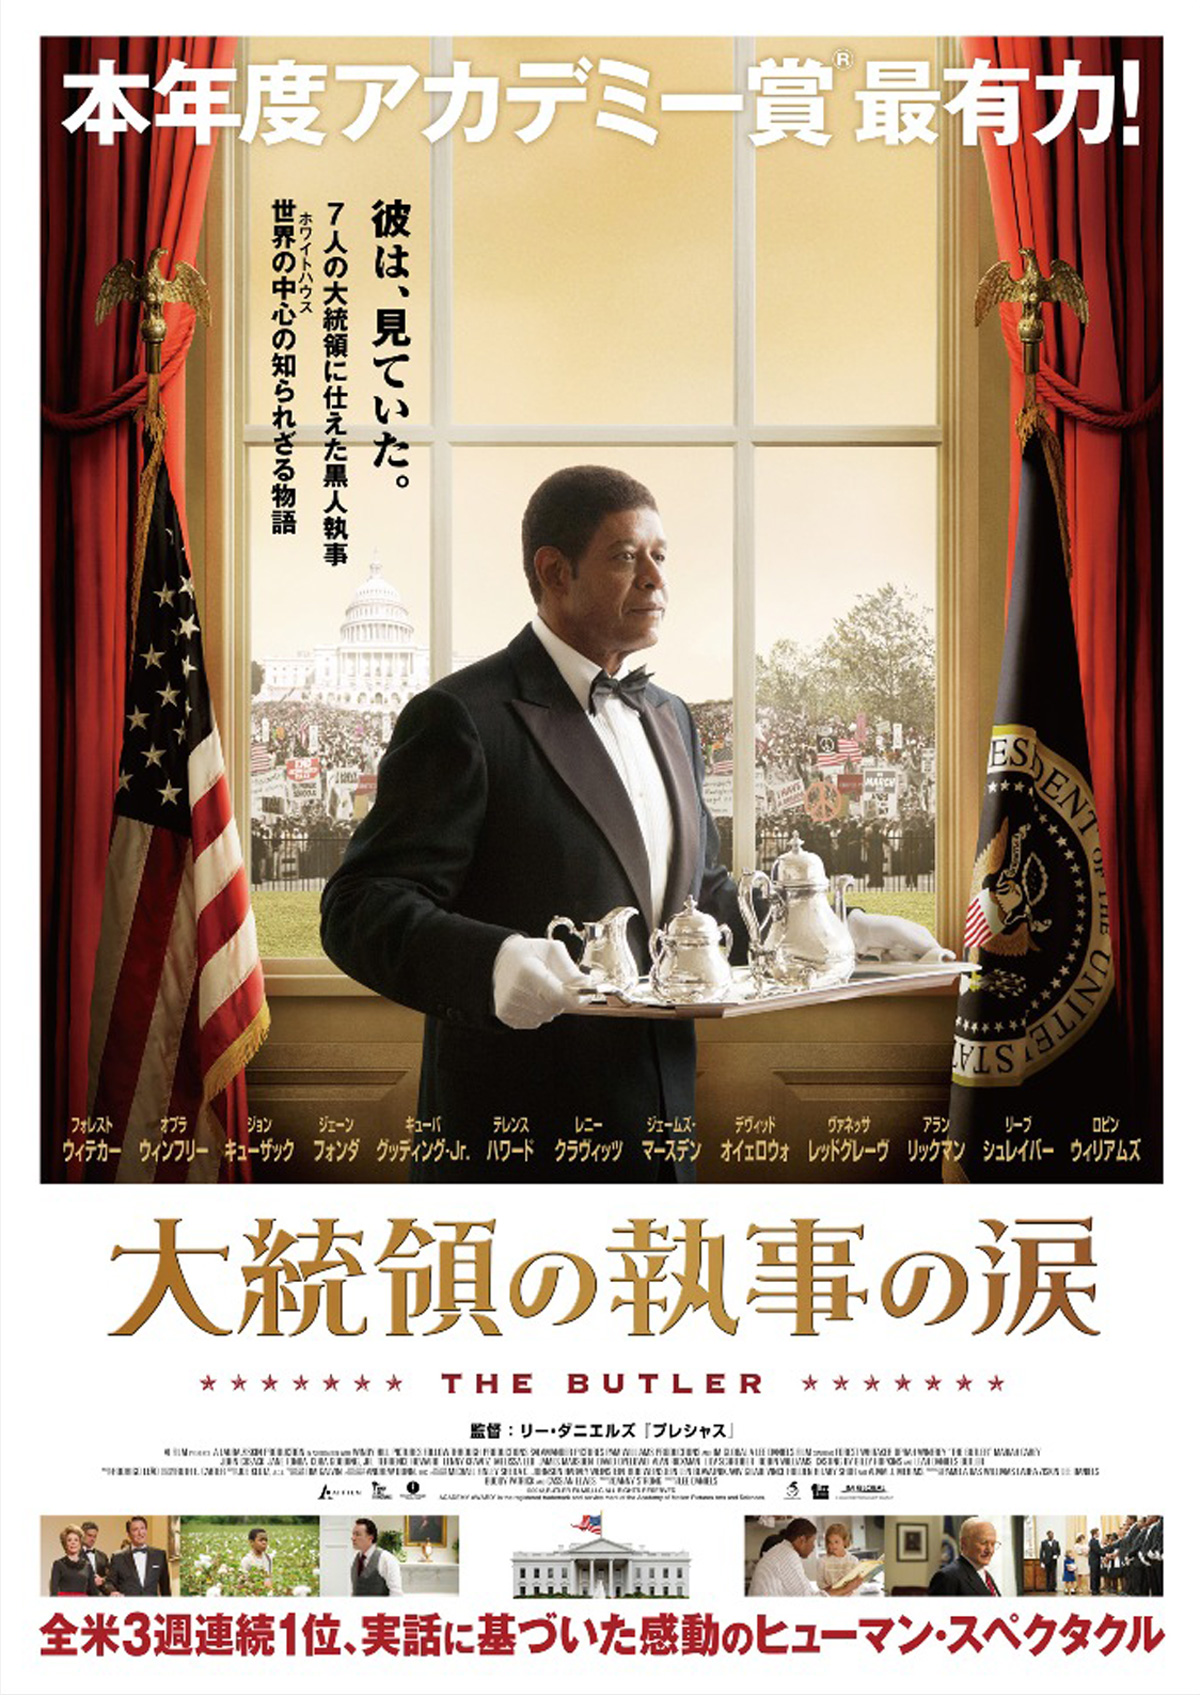 大統領の執事の涙 yutakuさんの映画レビュー - Yahoo!映画